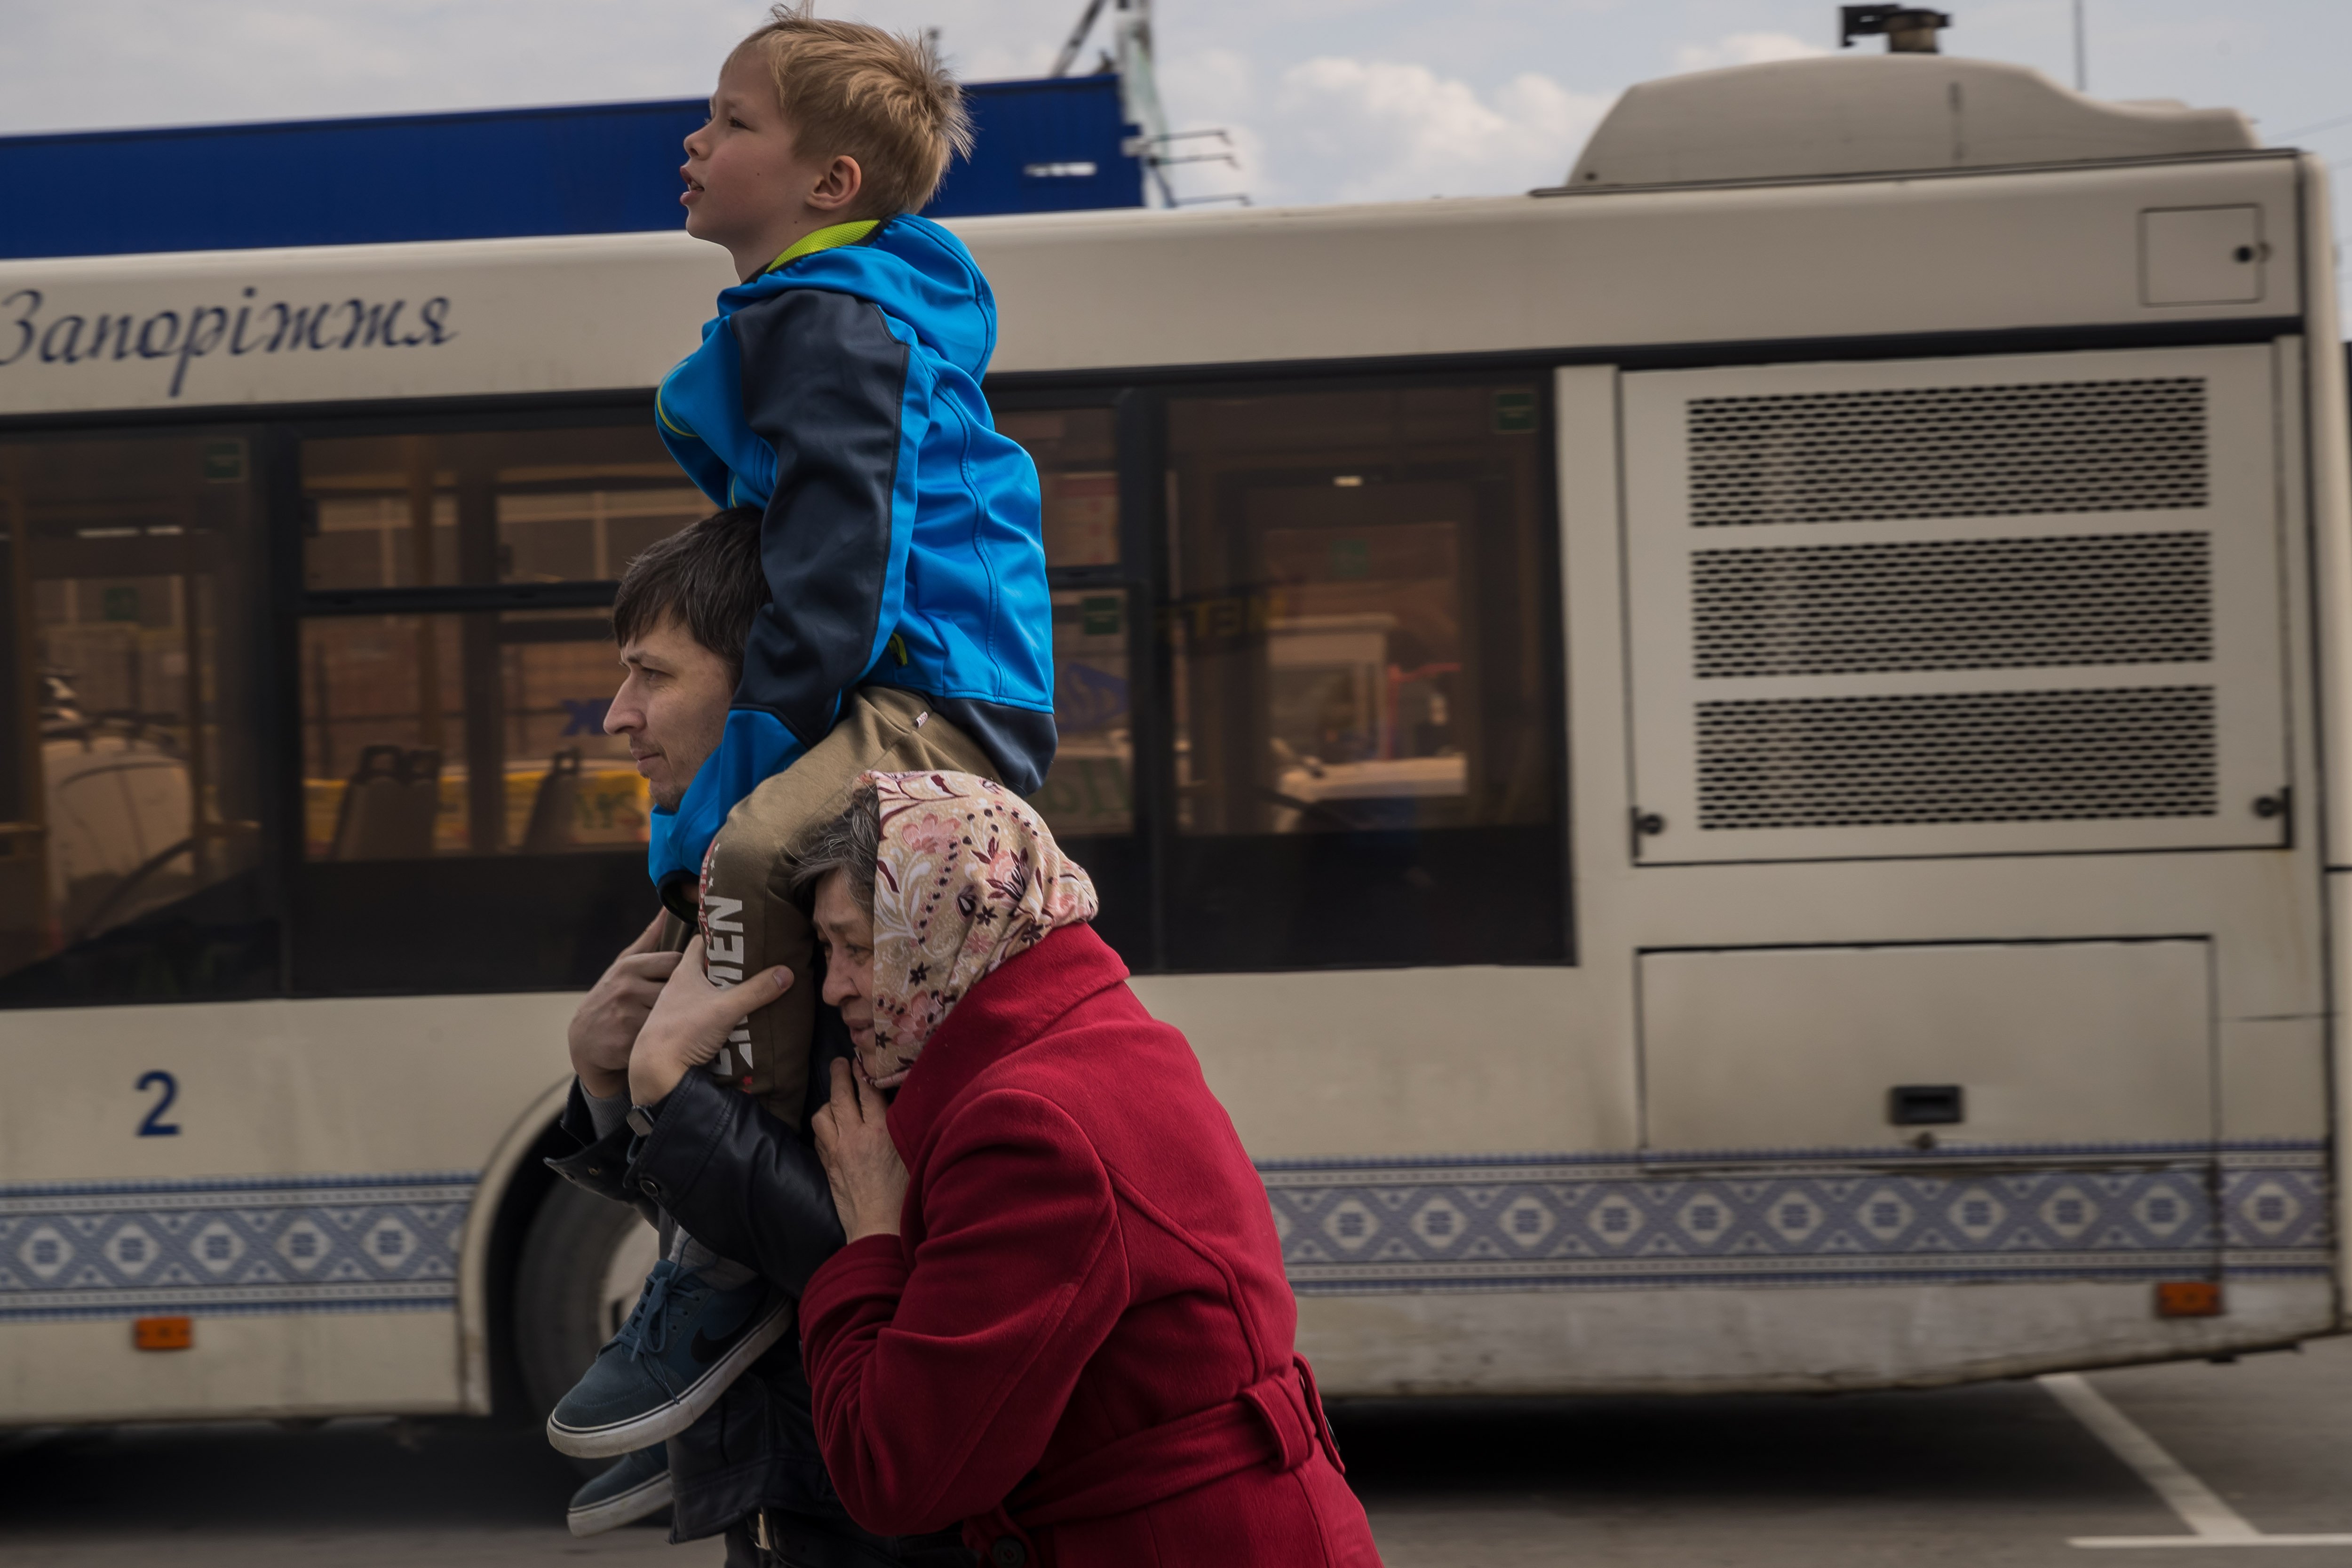 Ferides de guerra, malnutrició i infeccions: l'OMS es prepara per rebre evacuats de Mariúpol